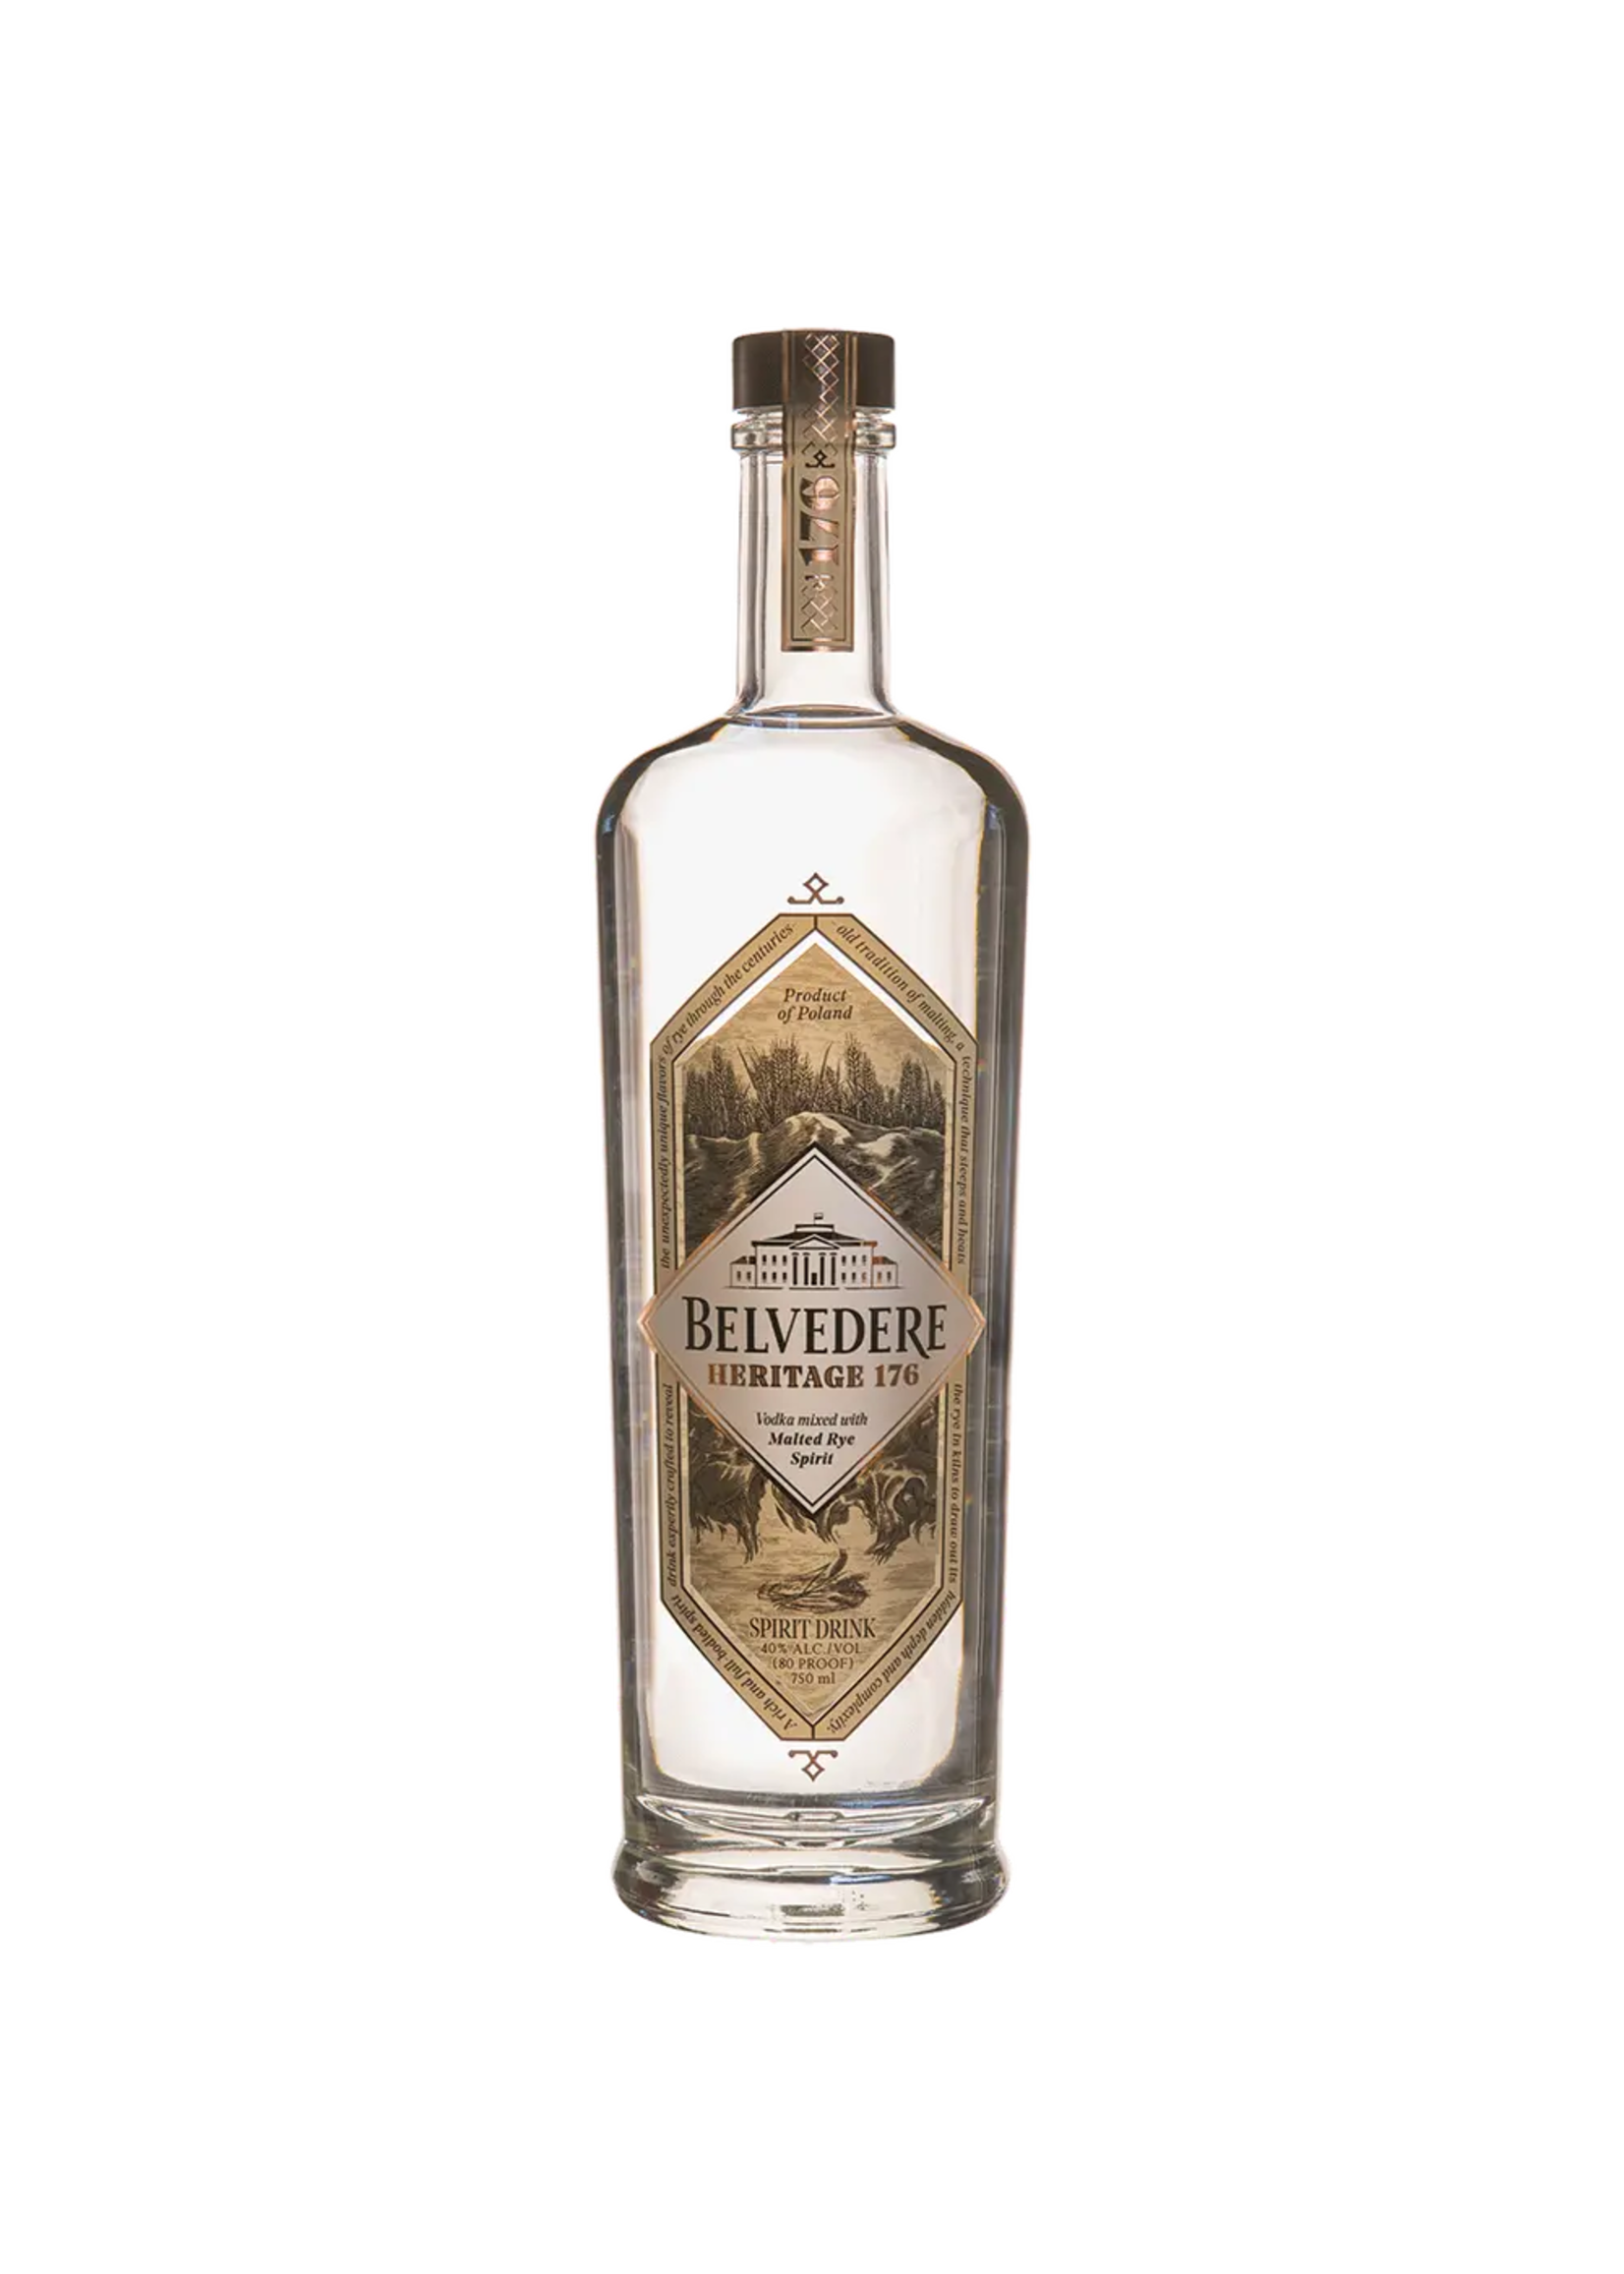 Belvedere Belvedere Heritage 176 Vodka 80Proof 750ml